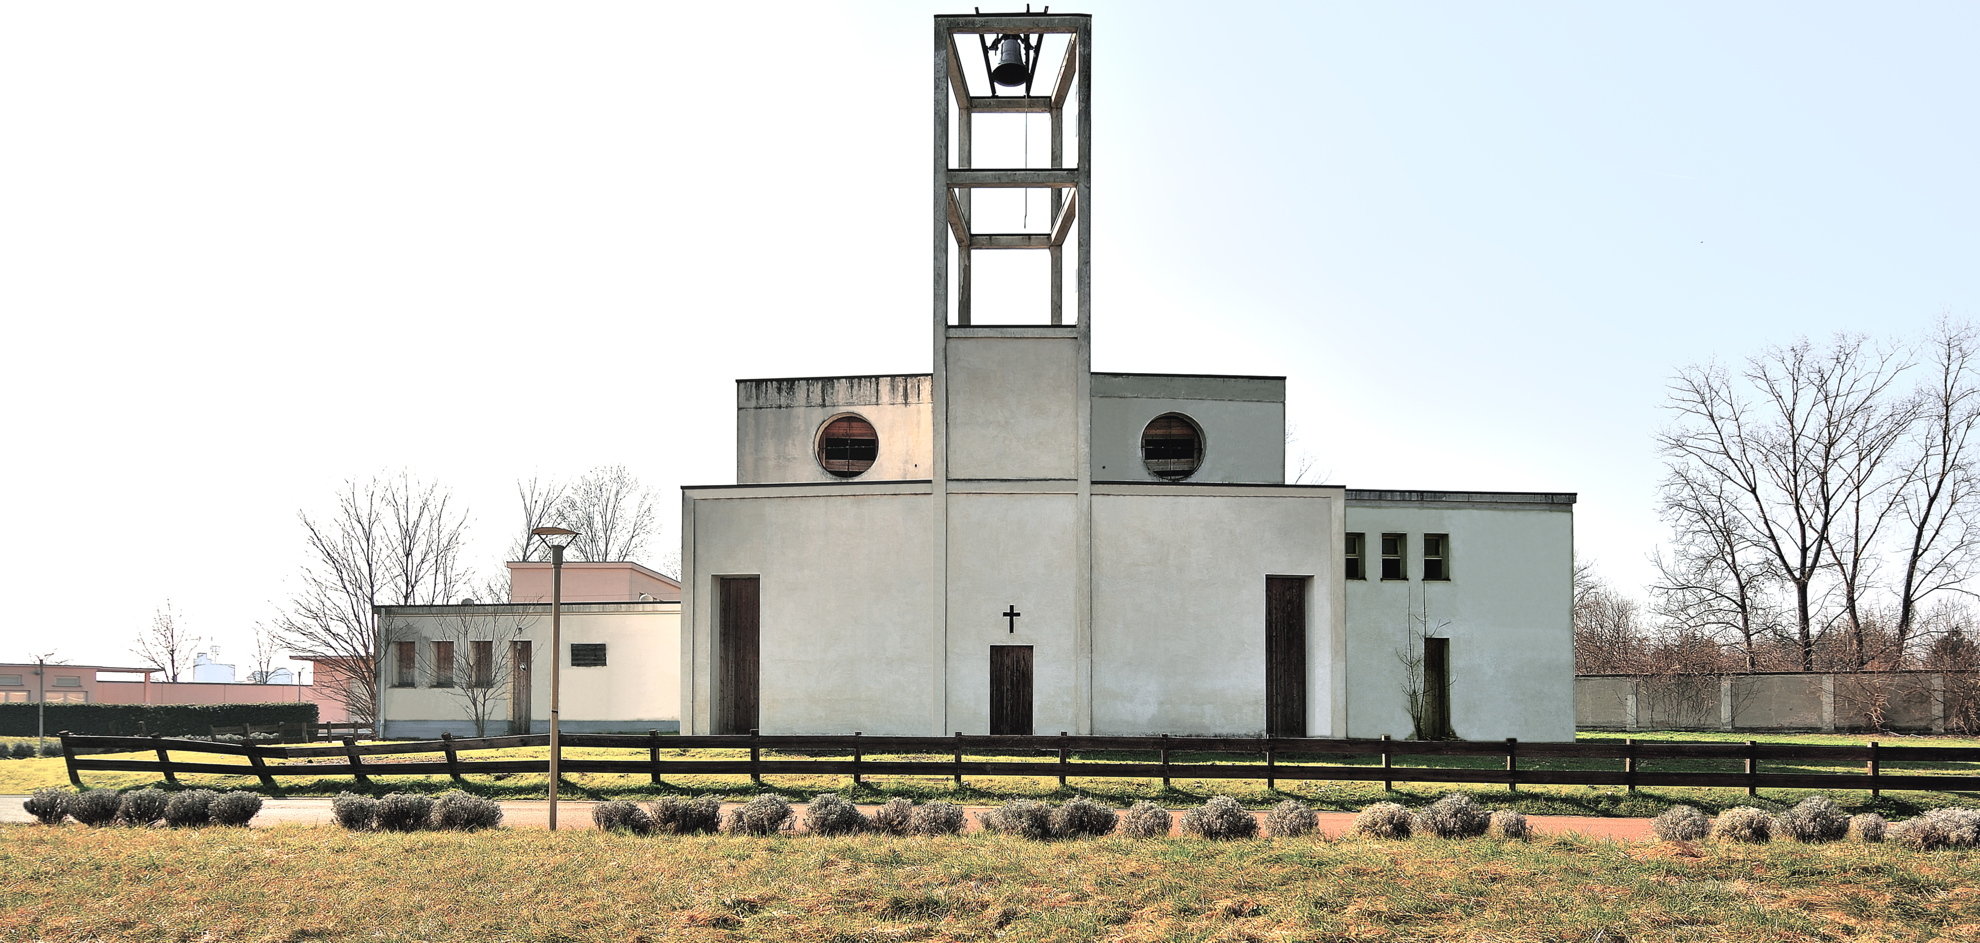 Chiesa del Sanatorio, constructed in Alessandria, Italy in 1926.